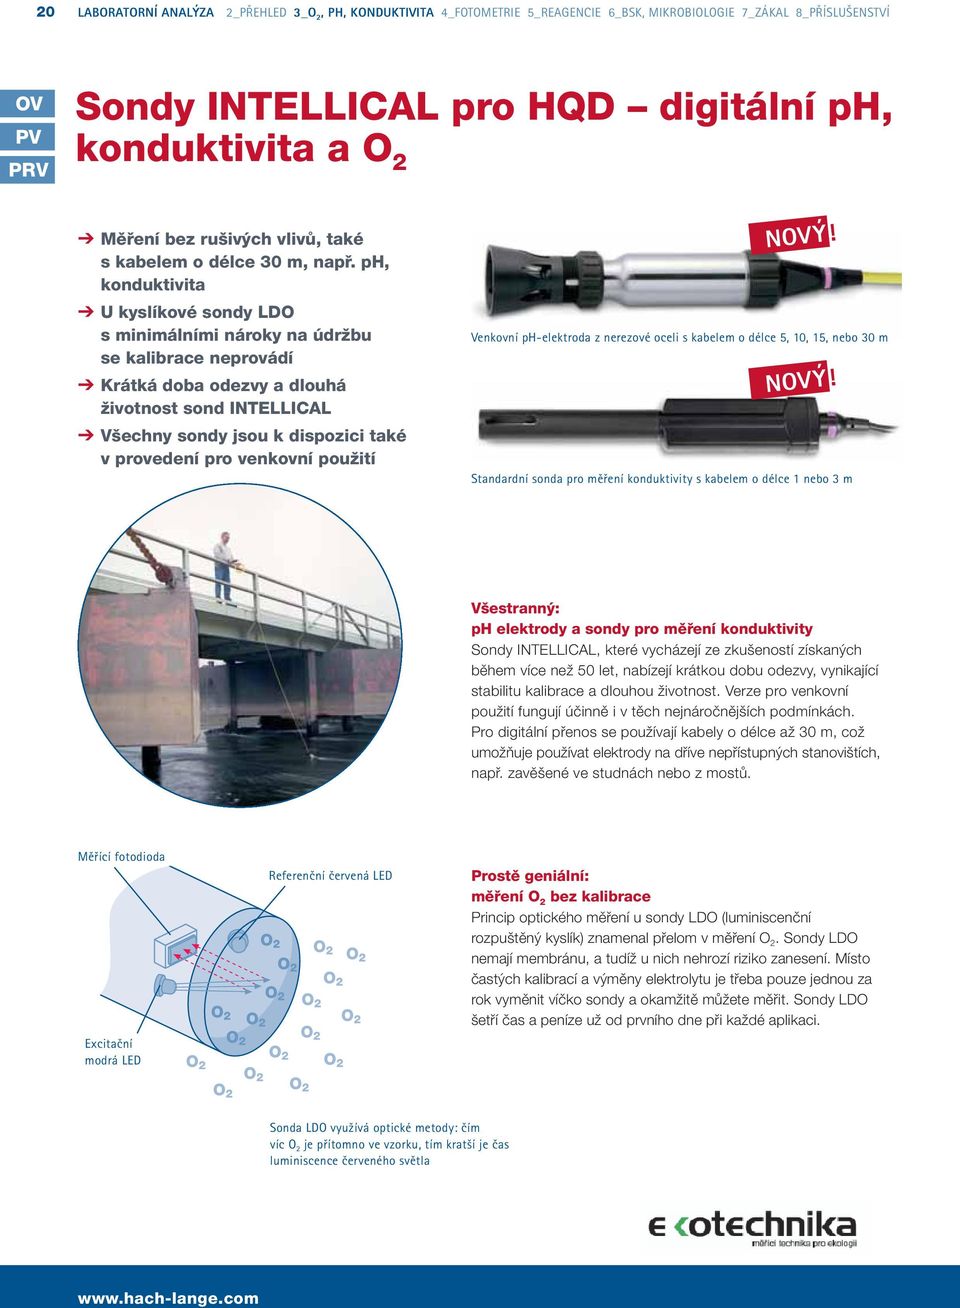 venkovní použití Venkovní ph-elektroda z nerezové oceli s kabelem o délce 5, 10, 15, nebo 0 m Standardní sonda pro měření konduktivity s kabelem o délce 1 nebo m Všestranný: ph elektrody a sondy pro